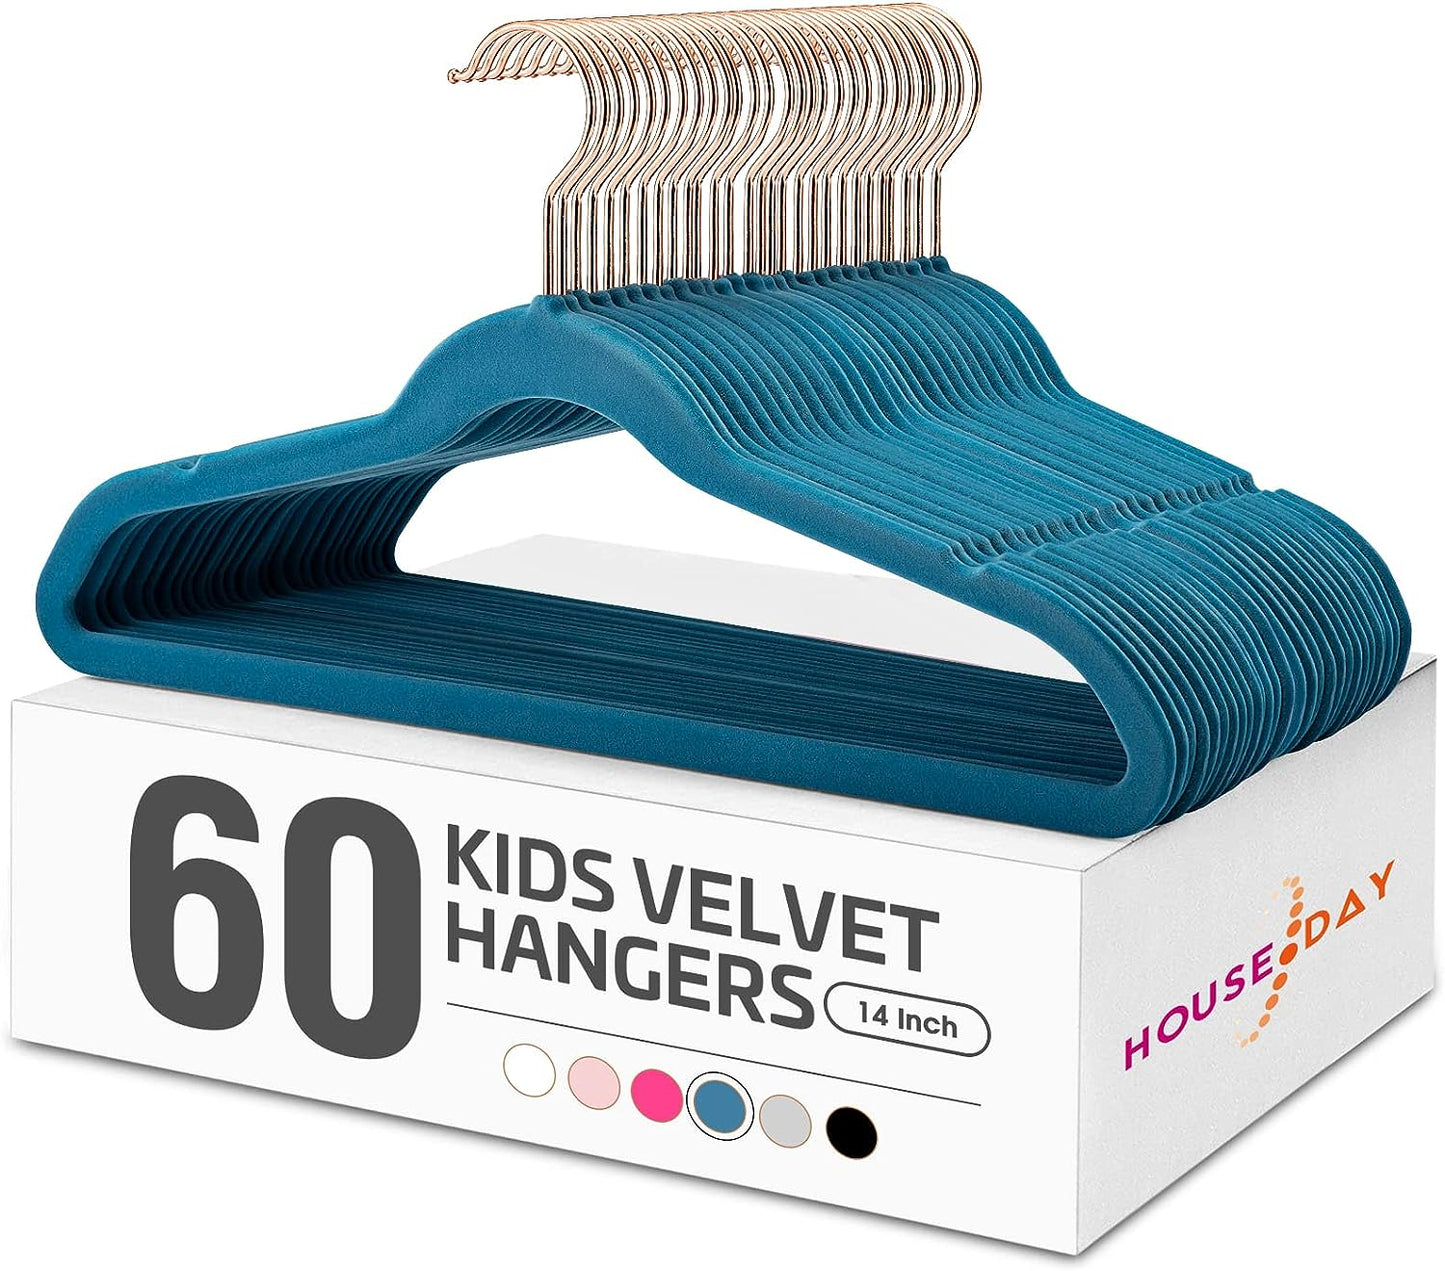 House Day 14 Inch Velvet Kids Hangers Light Blue 60 Pack